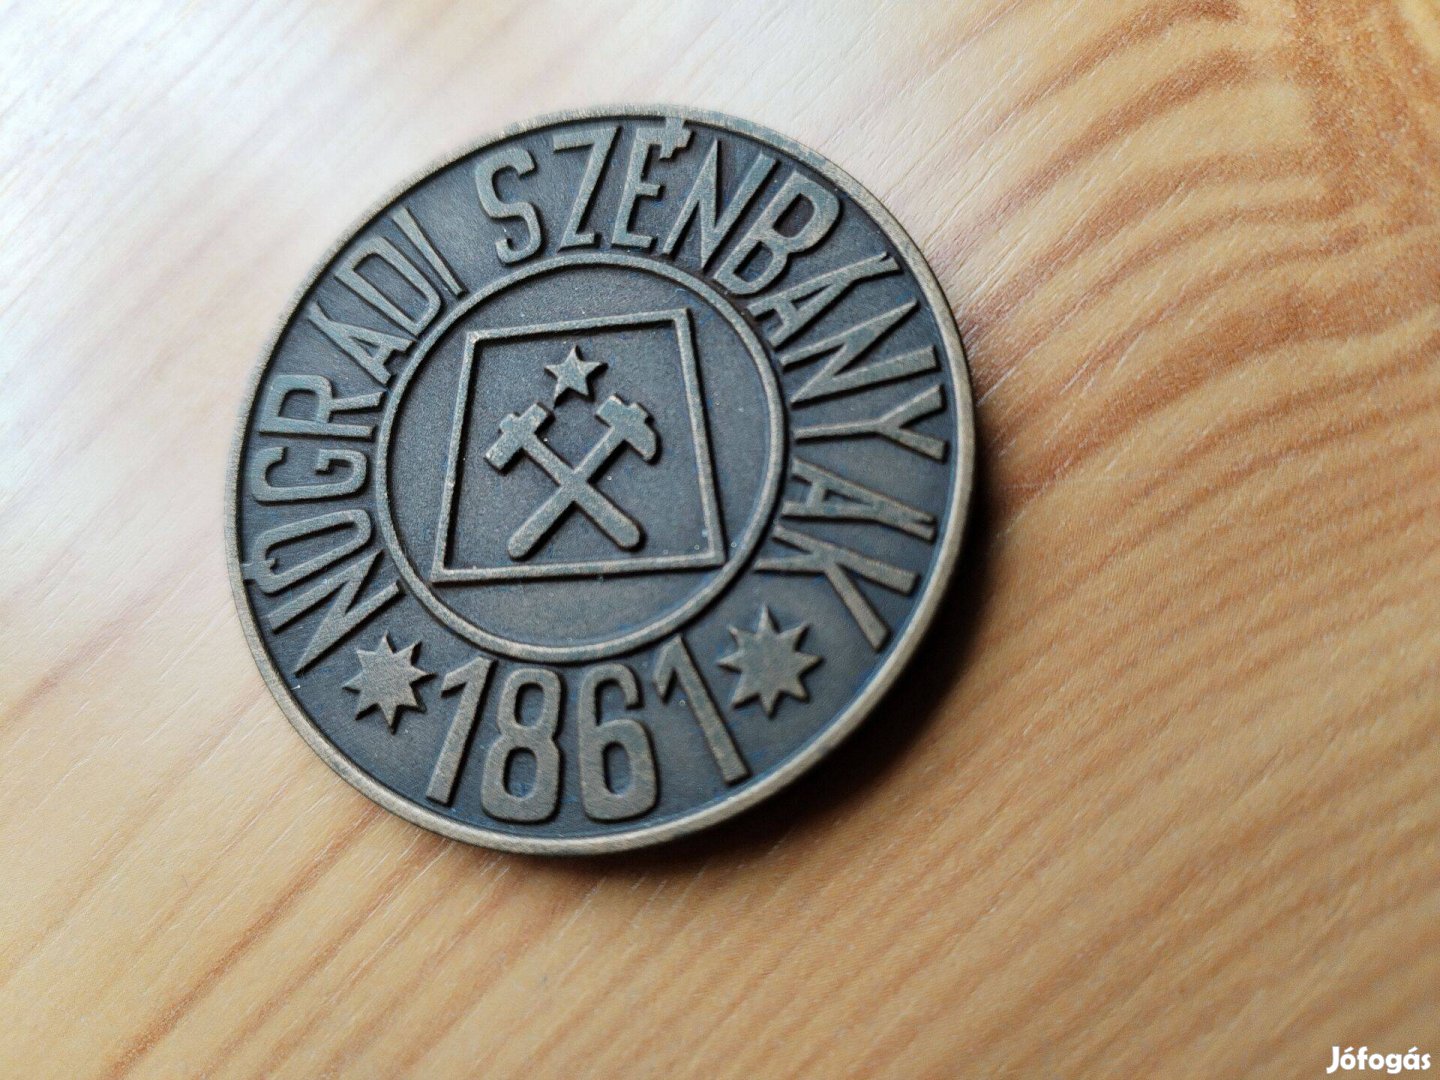 Nógrádi Szénbányák bronz emlékérem Salgótarján 1961 csak 200 db